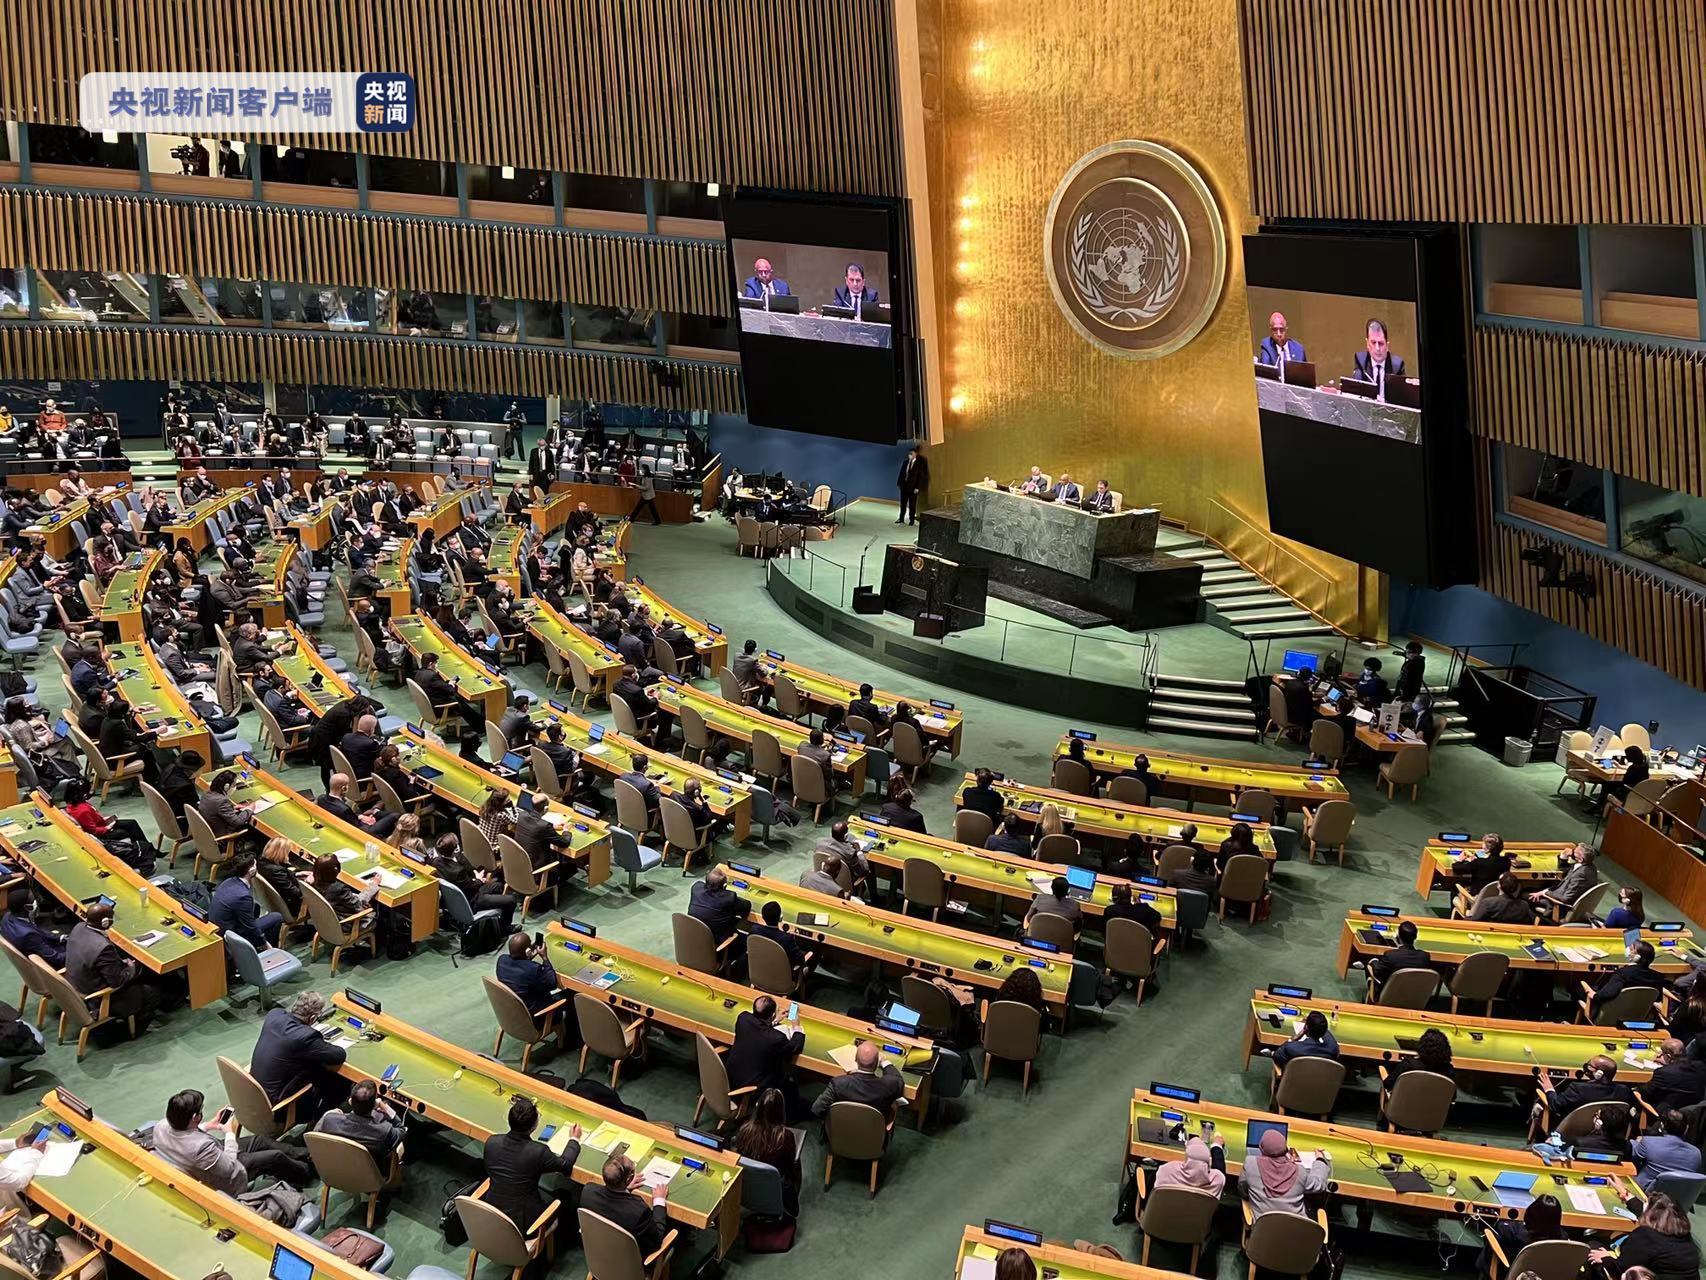 联合国大会通过决议谴责俄入侵乌 要求立即撤军 中国弃权 - 国际 - 俄乌之战